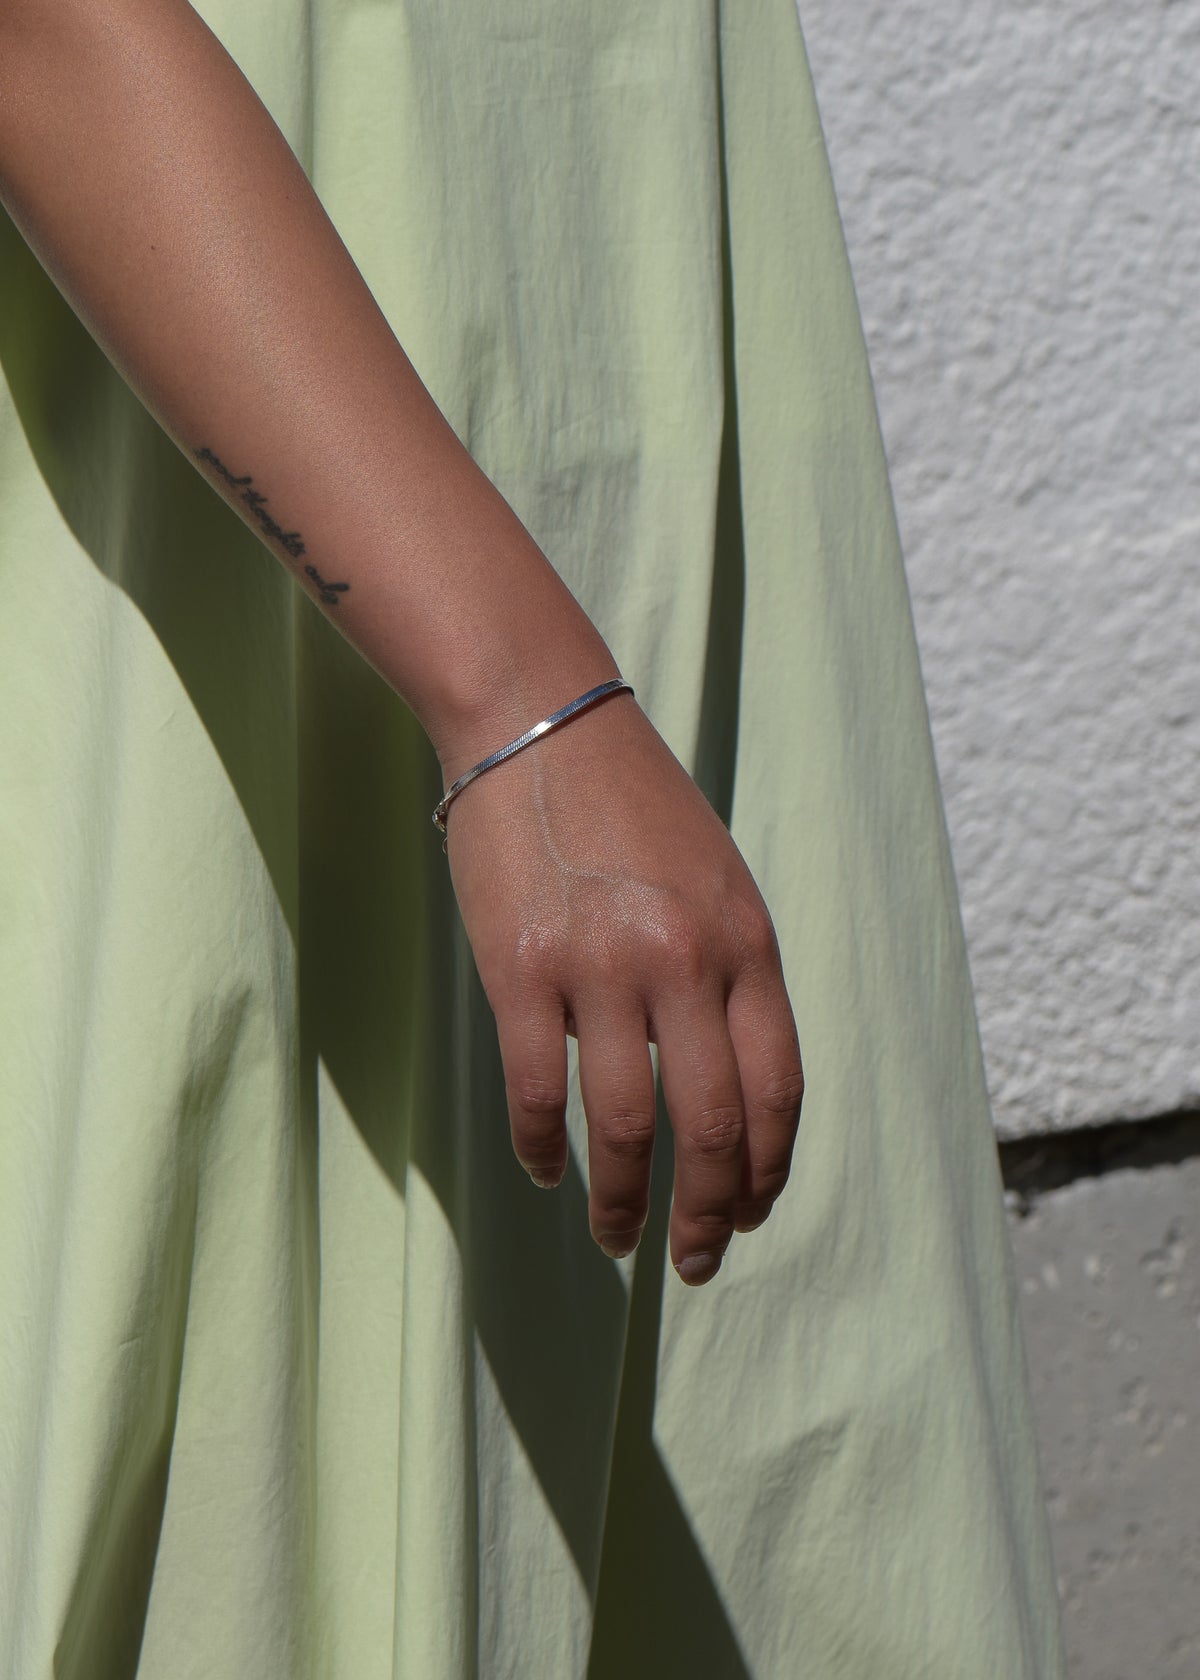 Arianne Chain Bracelet in Silver